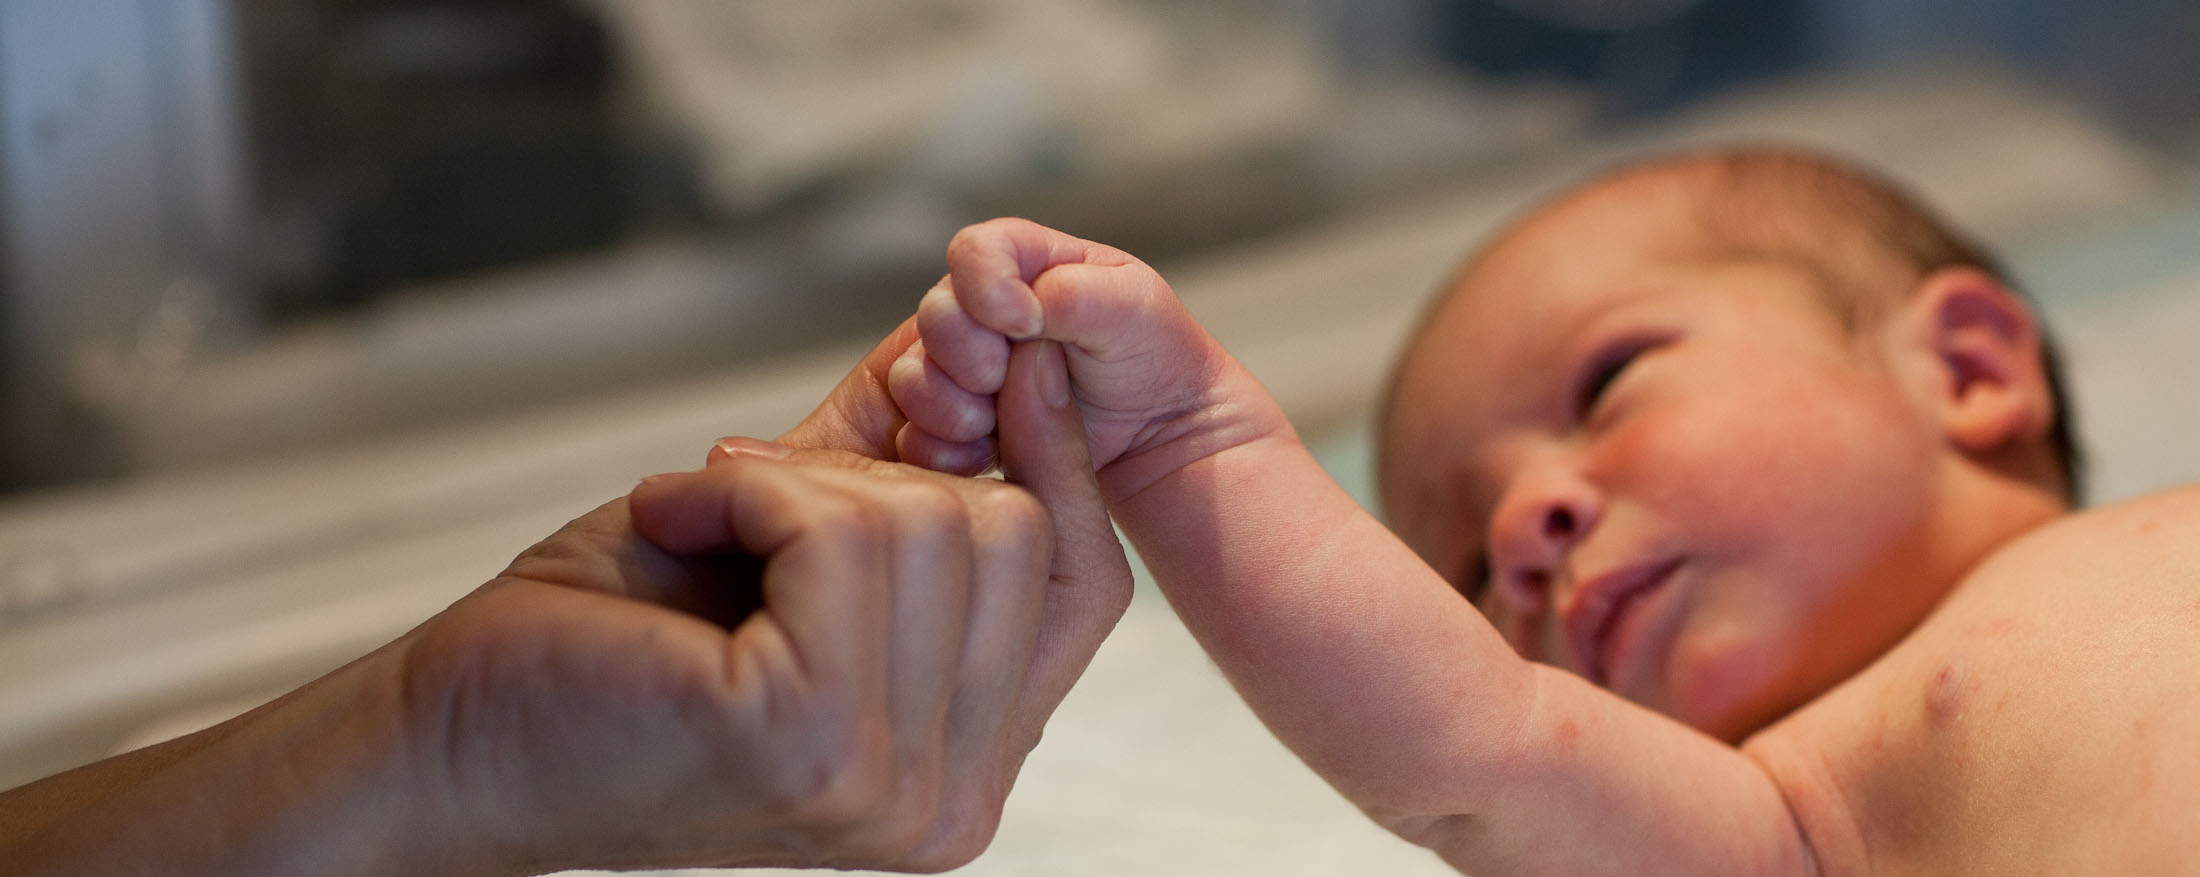 एक वयस्क नवजात शिशु का हाथ धीरे से पकड़ रहा है